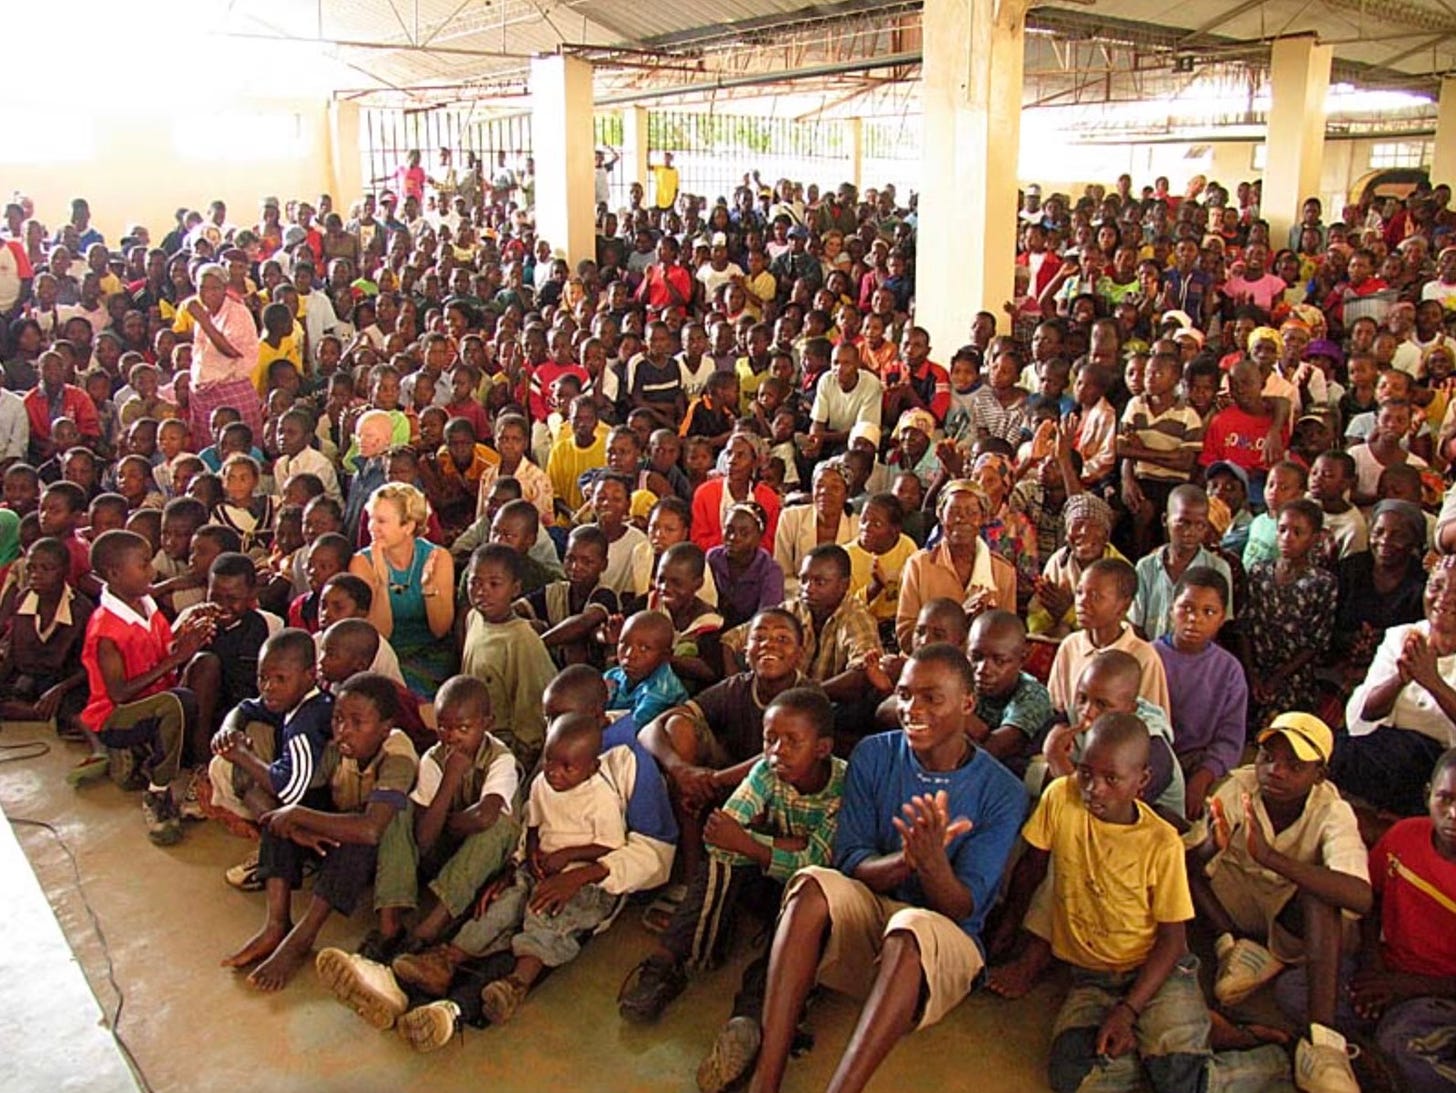 Heidi Baker sitting with hundreds of children in Africa